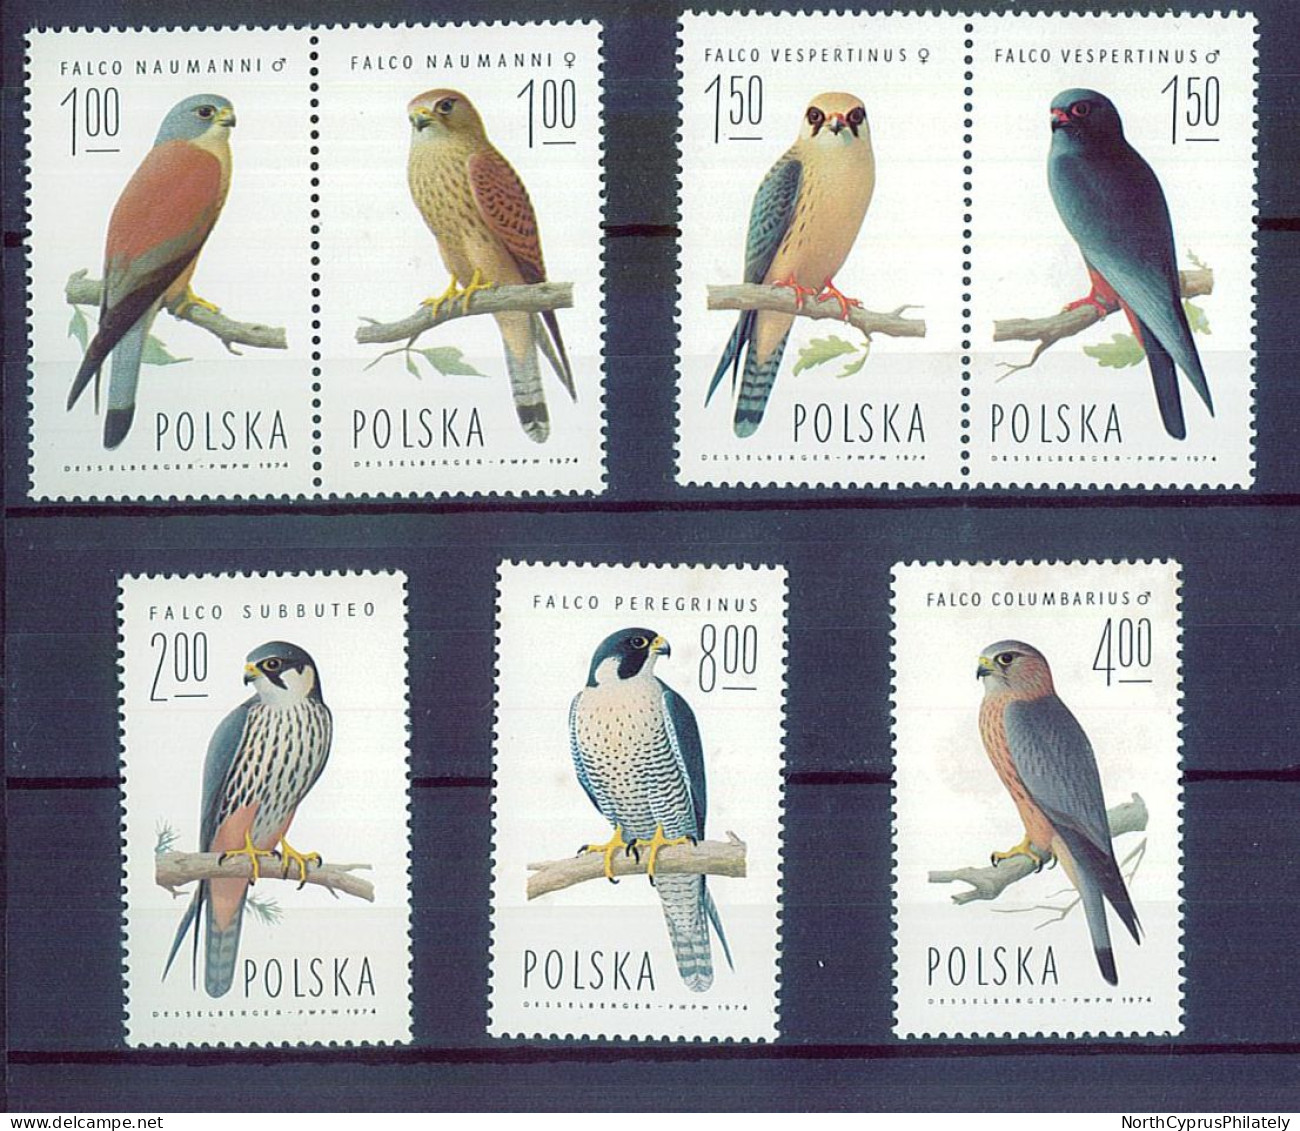 POLSKA POLAND 1964 Birds Falcon, MNH - Águilas & Aves De Presa